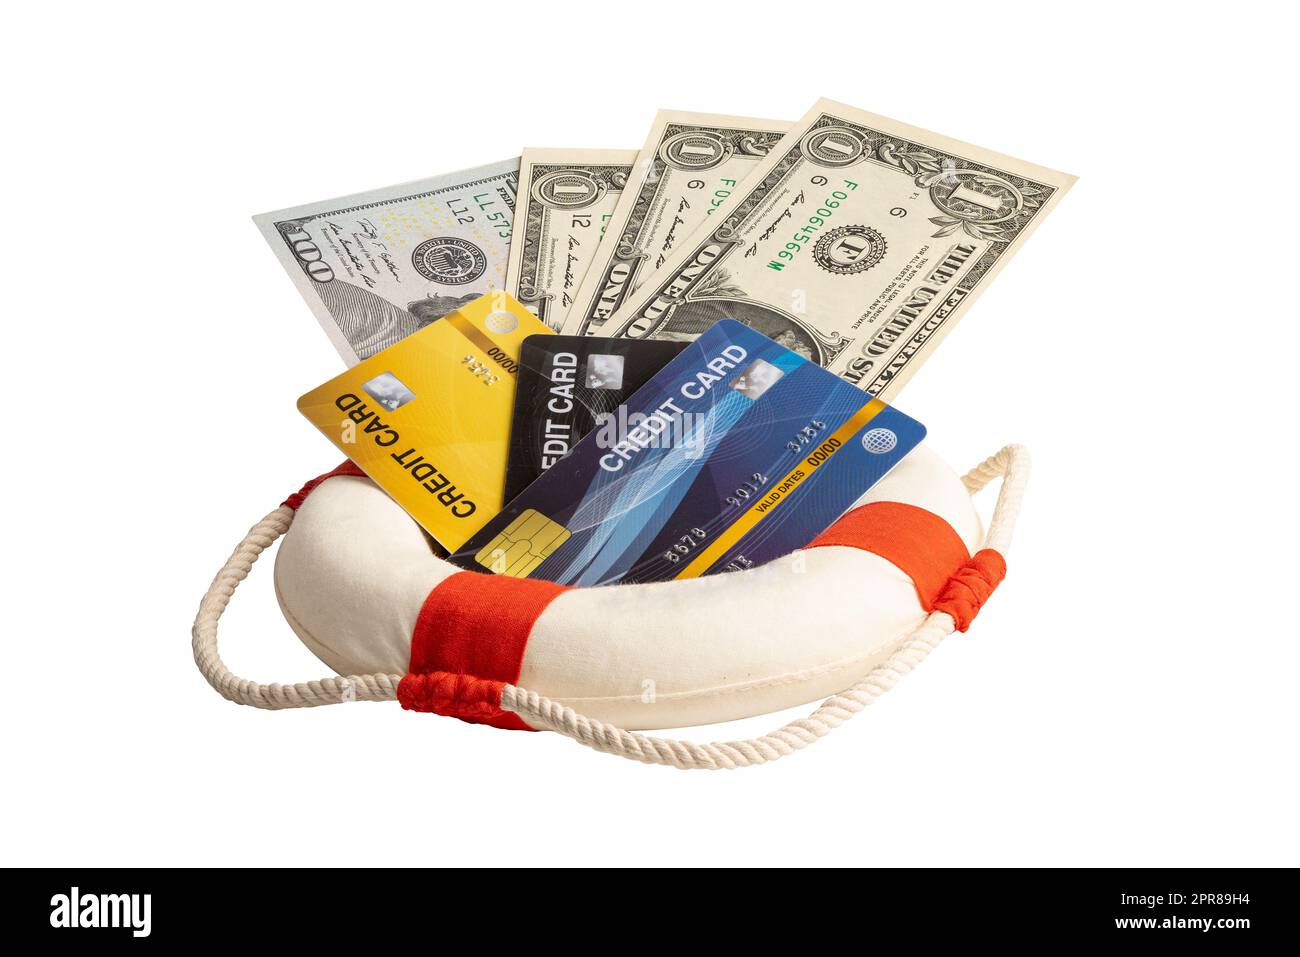 Crisis financiera, bote salvavidas con billetes en dólares estadounidenses, asistencia y seguridad financiera. Foto de stock